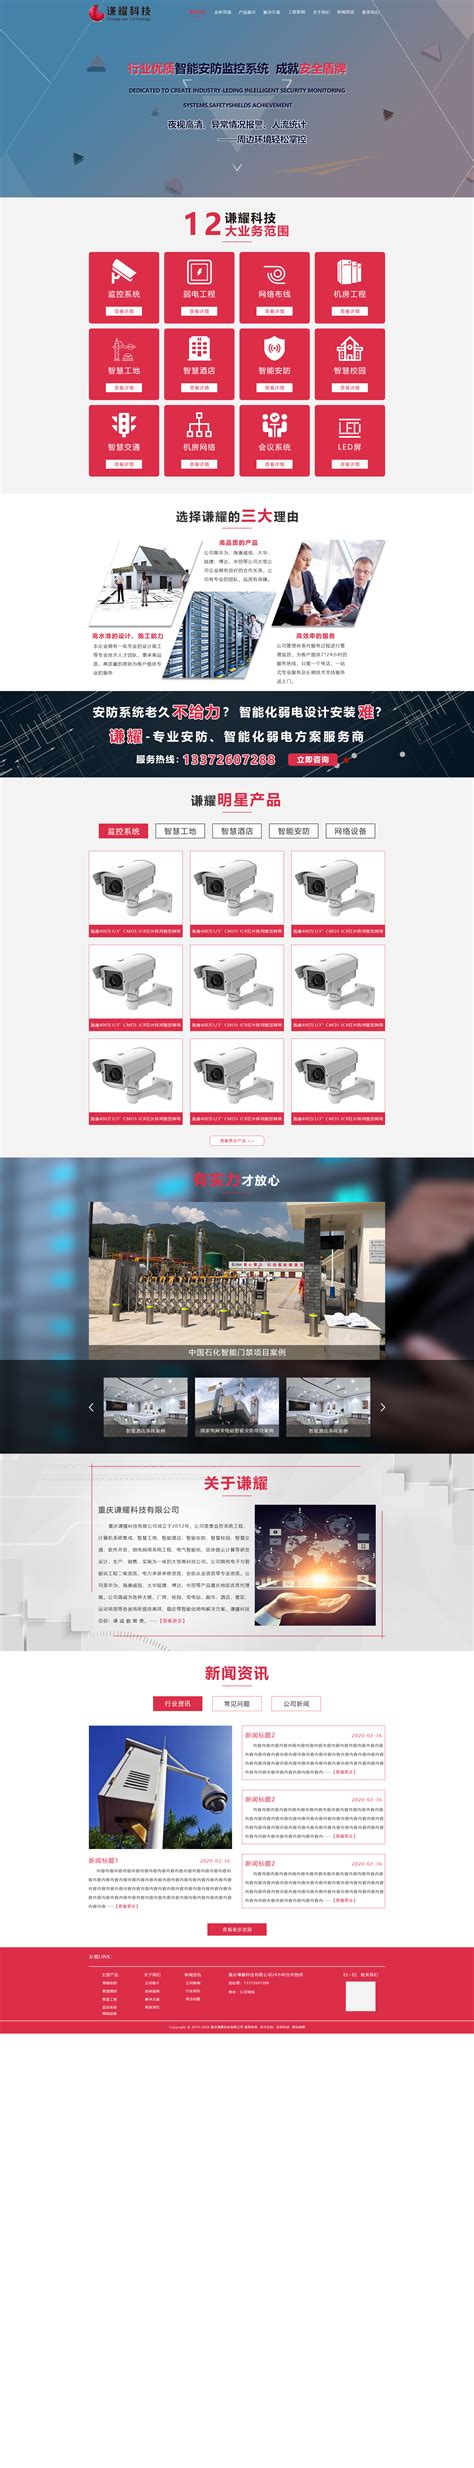 重庆网站制作和推广公司